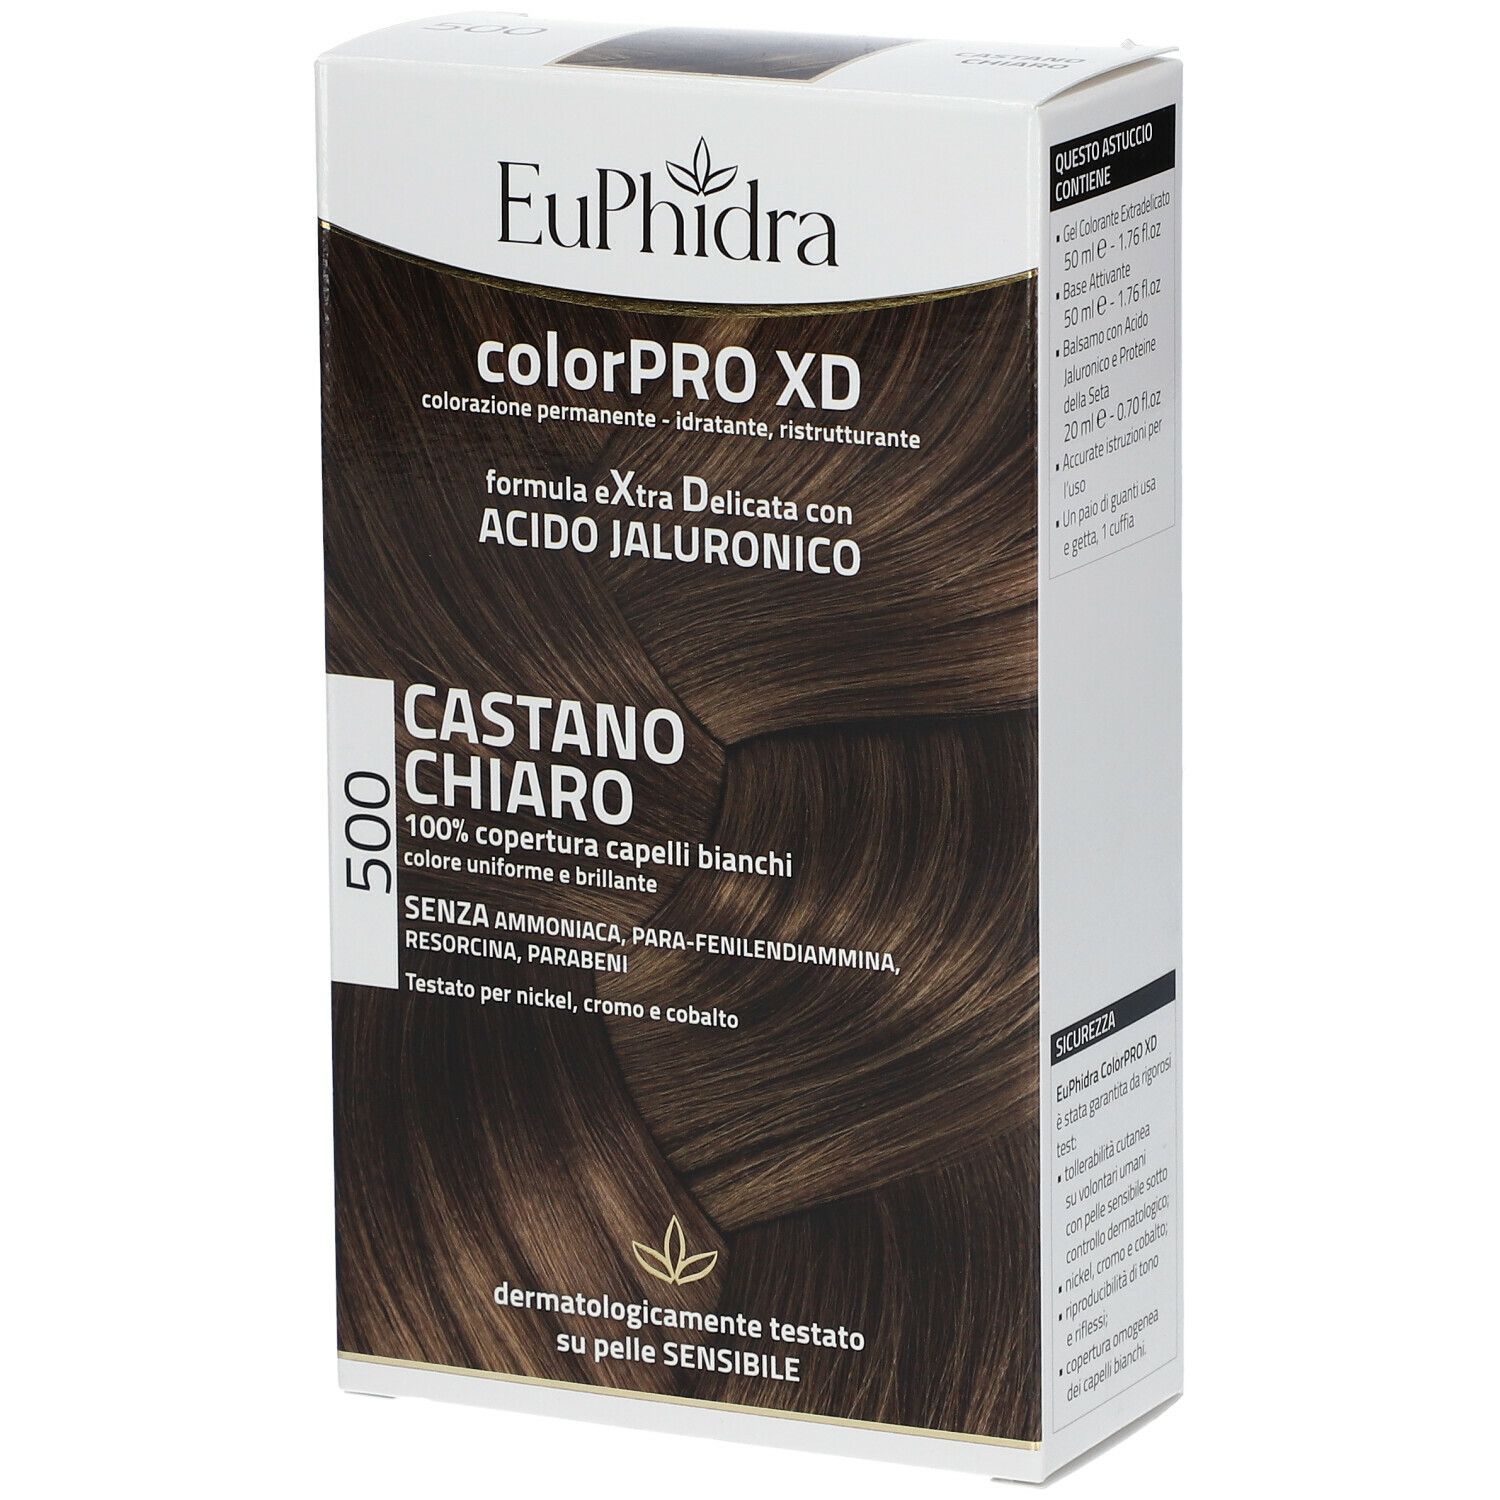 Euphidra ColorPRO XD Castano Chiaro 500